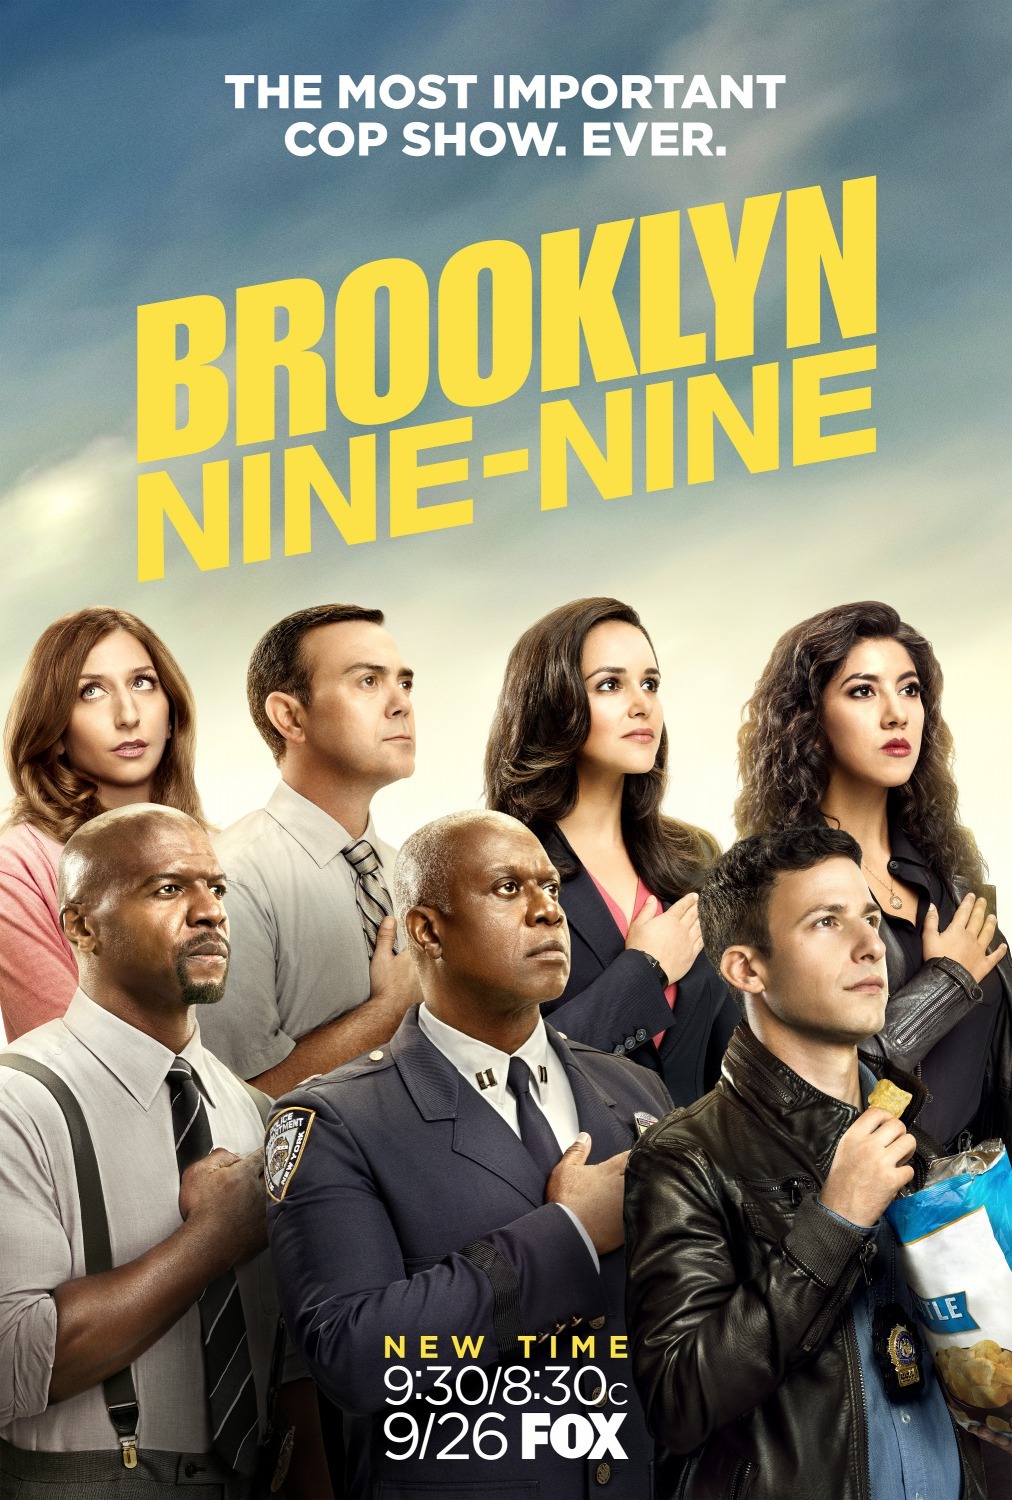 ดูหนังออนไลน์ฟรี Brooklyn Nine-Nine Season 4 EP.13 บรู๊คลินเก้า ปี 4 ตอนที่ 13